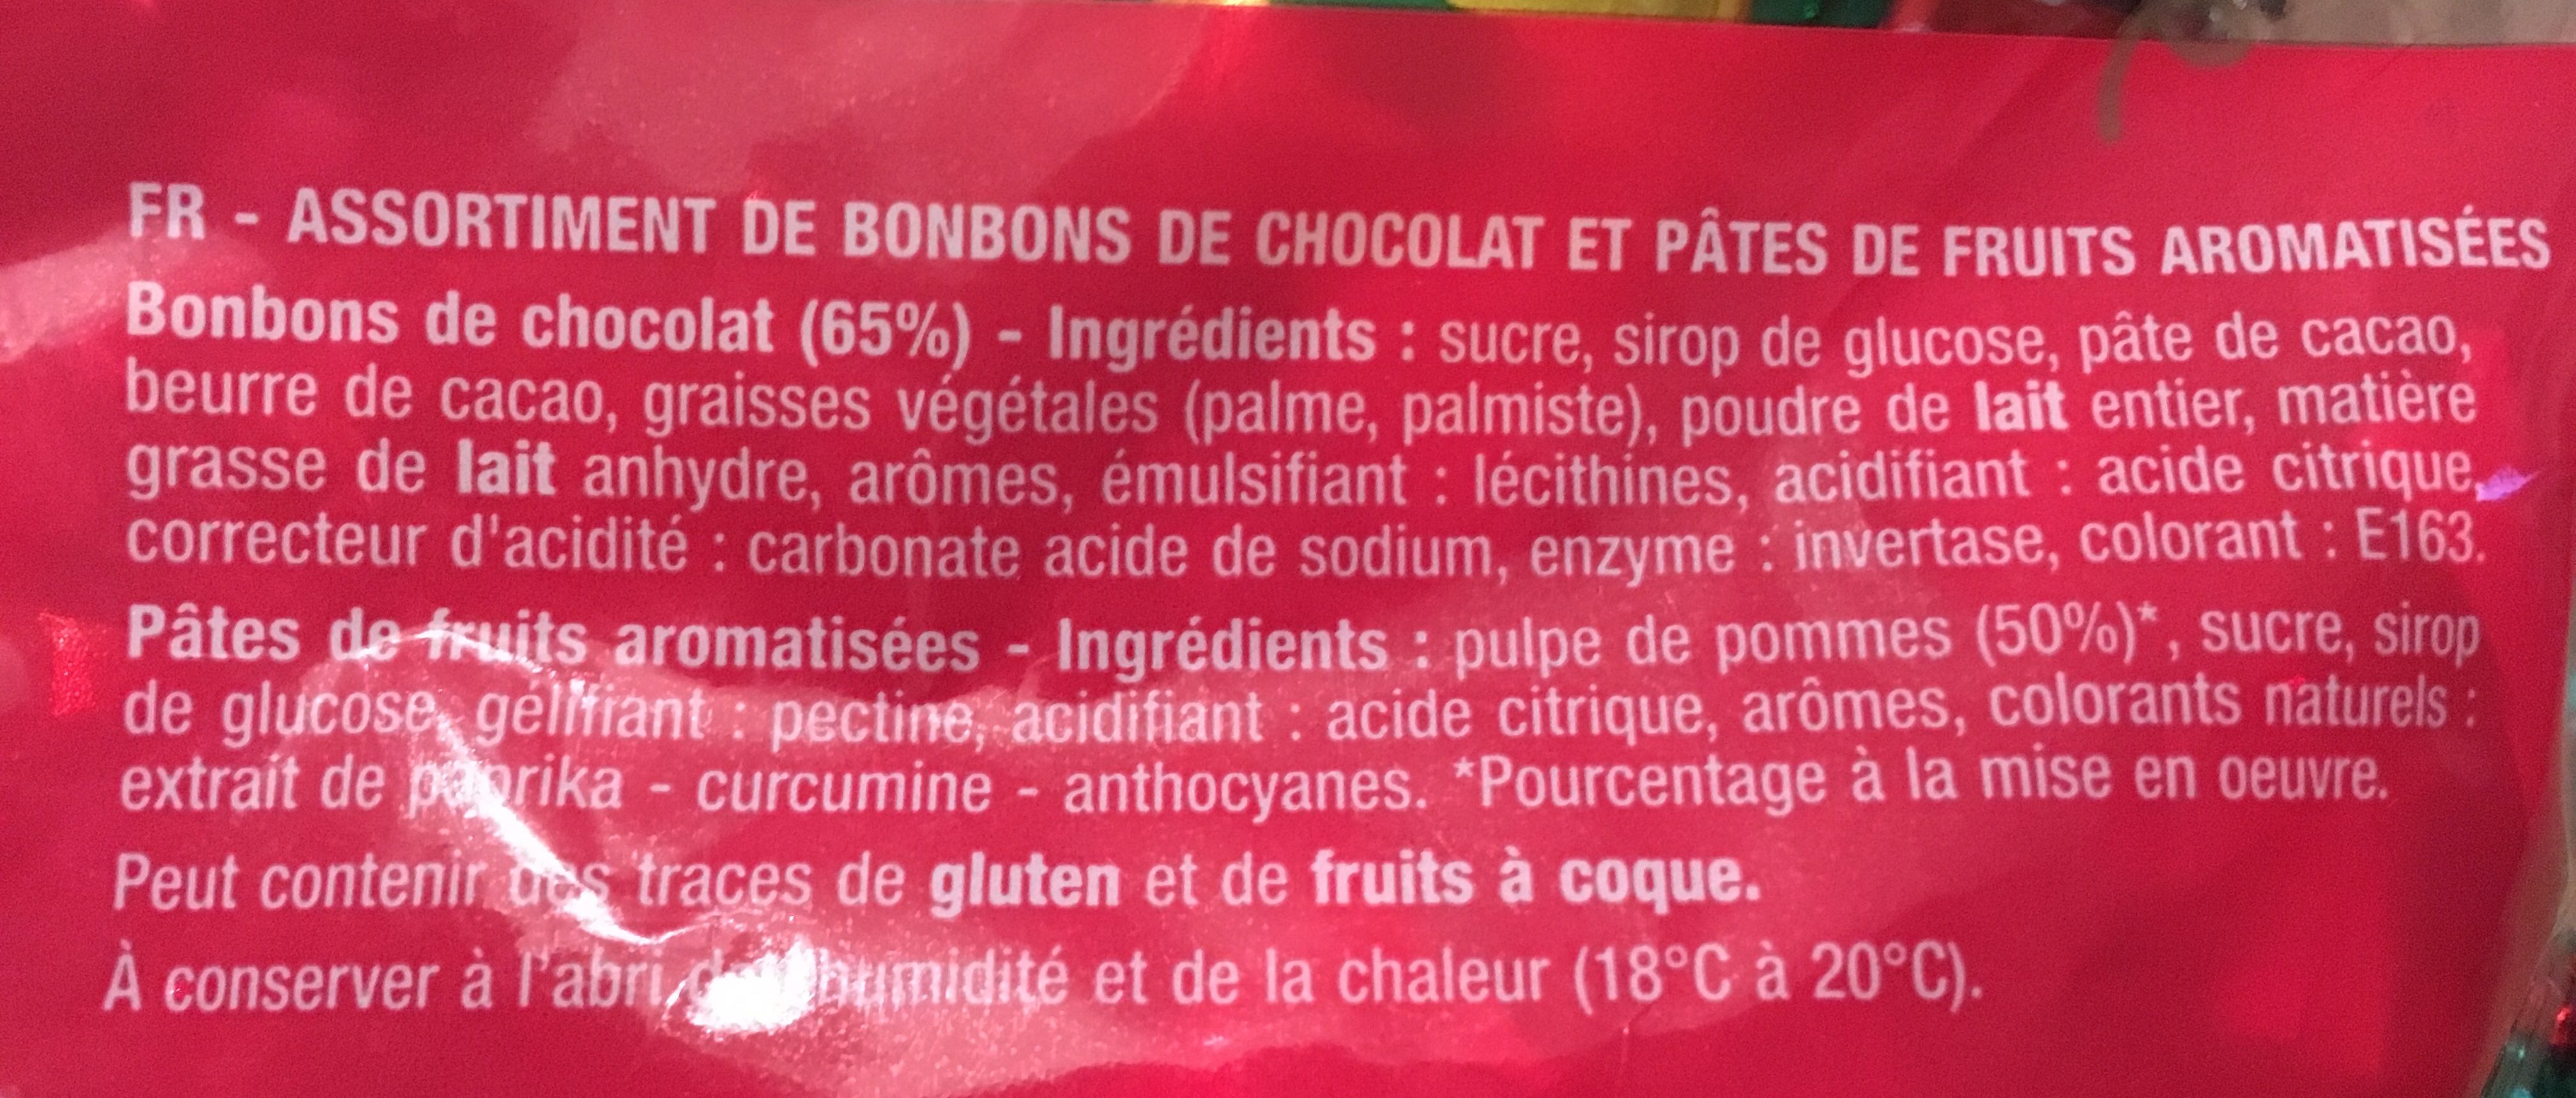 Papillotes au chocolat - Ingredients - fr